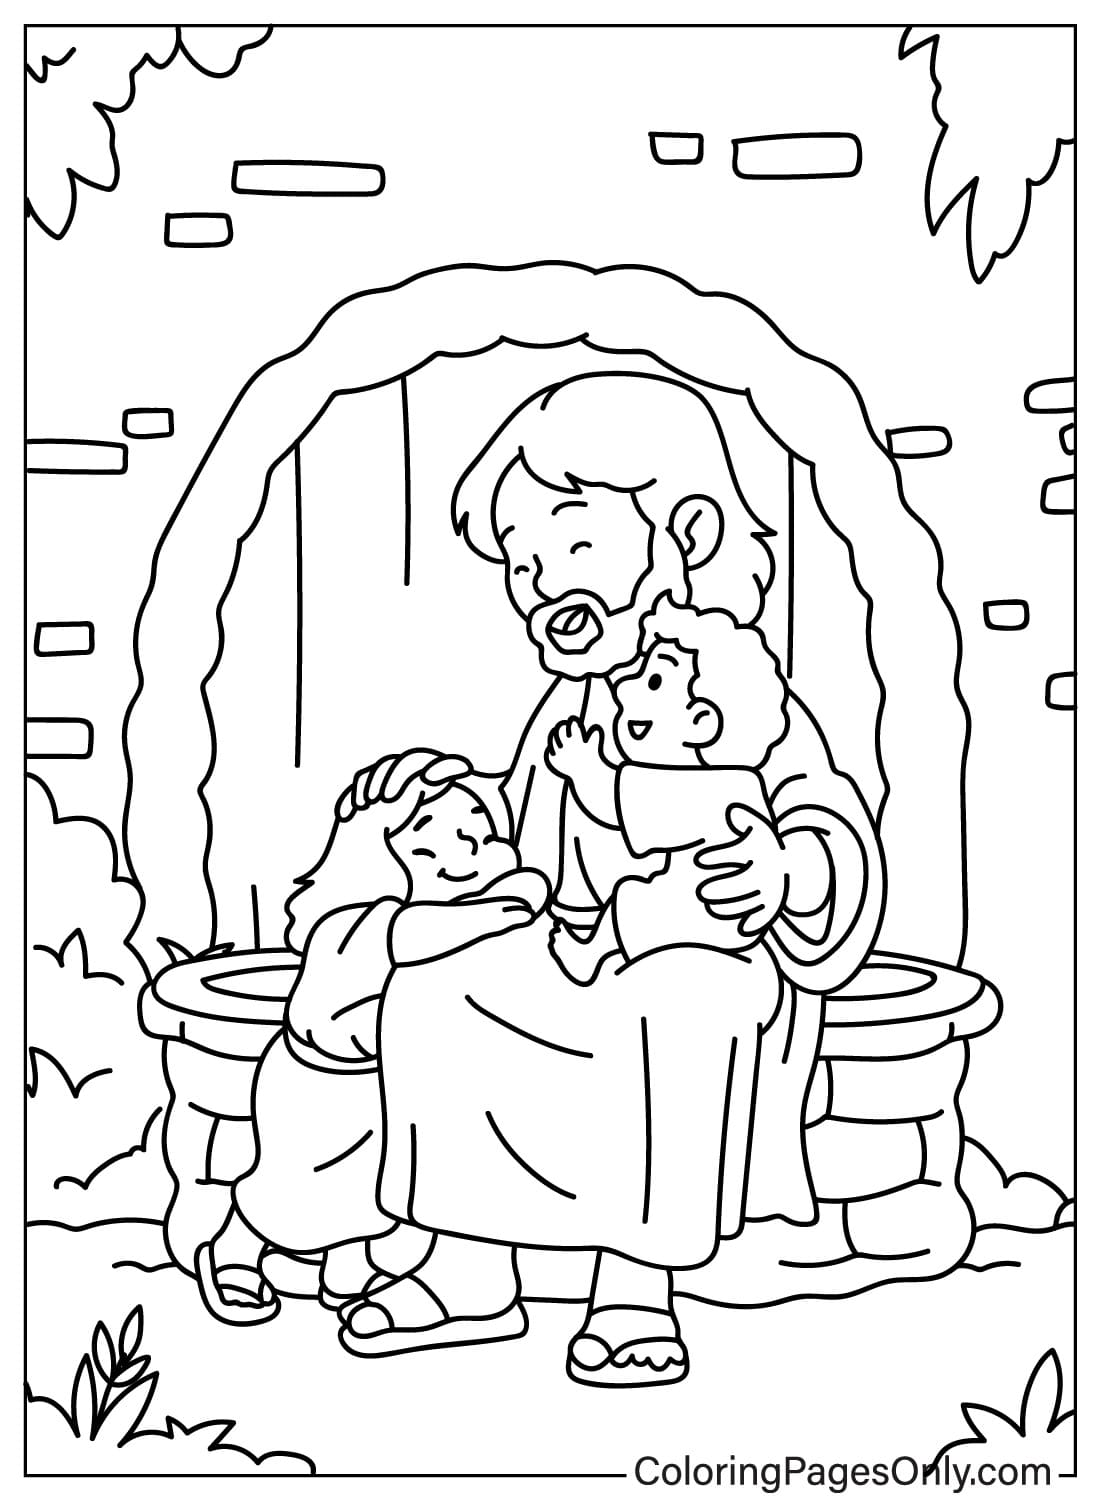 Página para colorear de Jesús y los niños gratis de Bible King